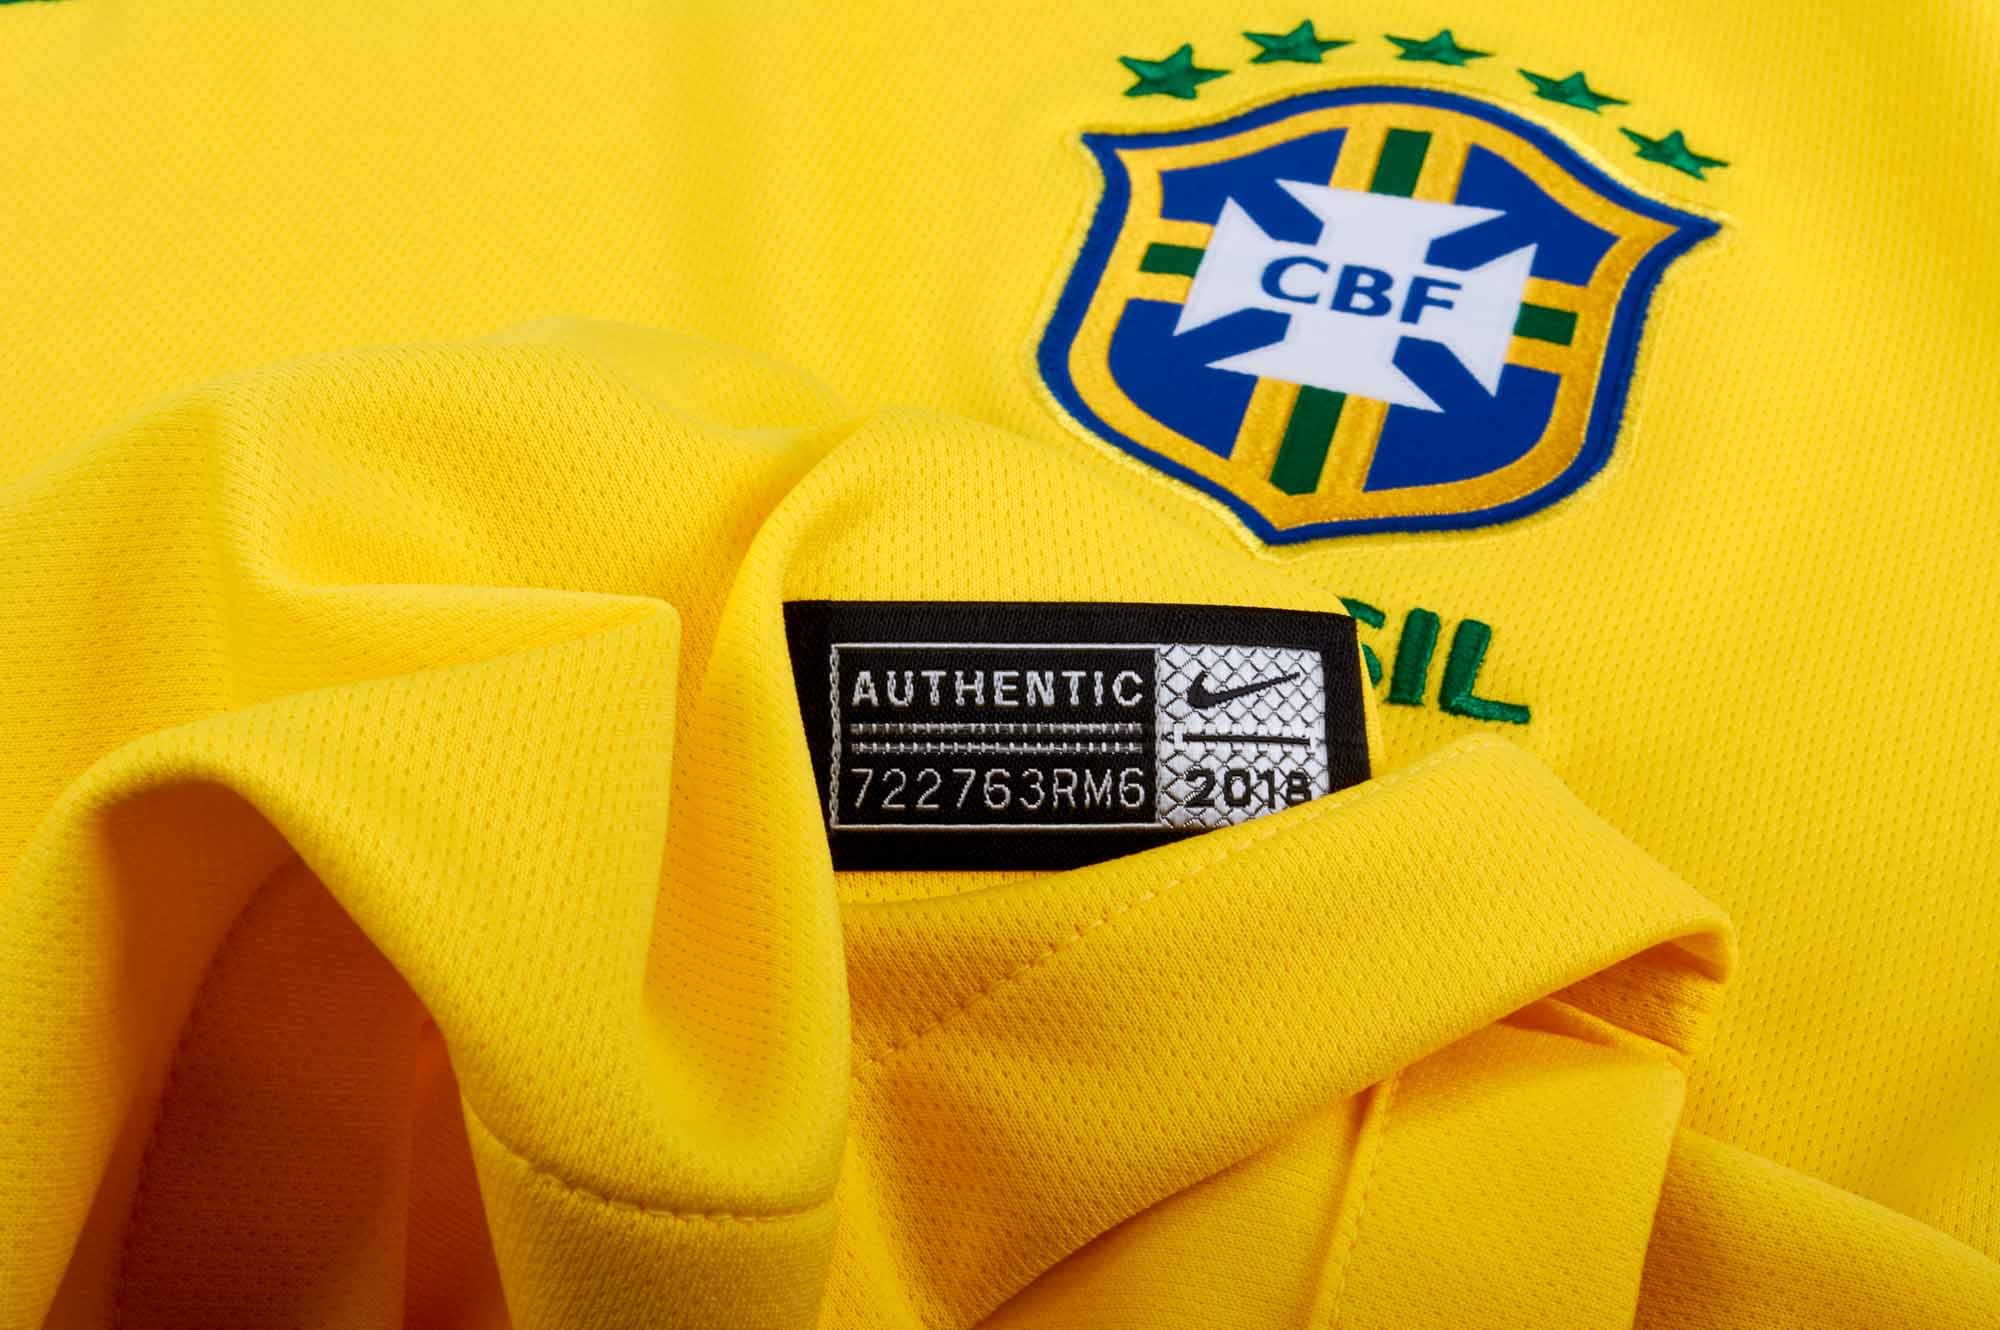 Nike Brazil Home Jersey 2018-19 